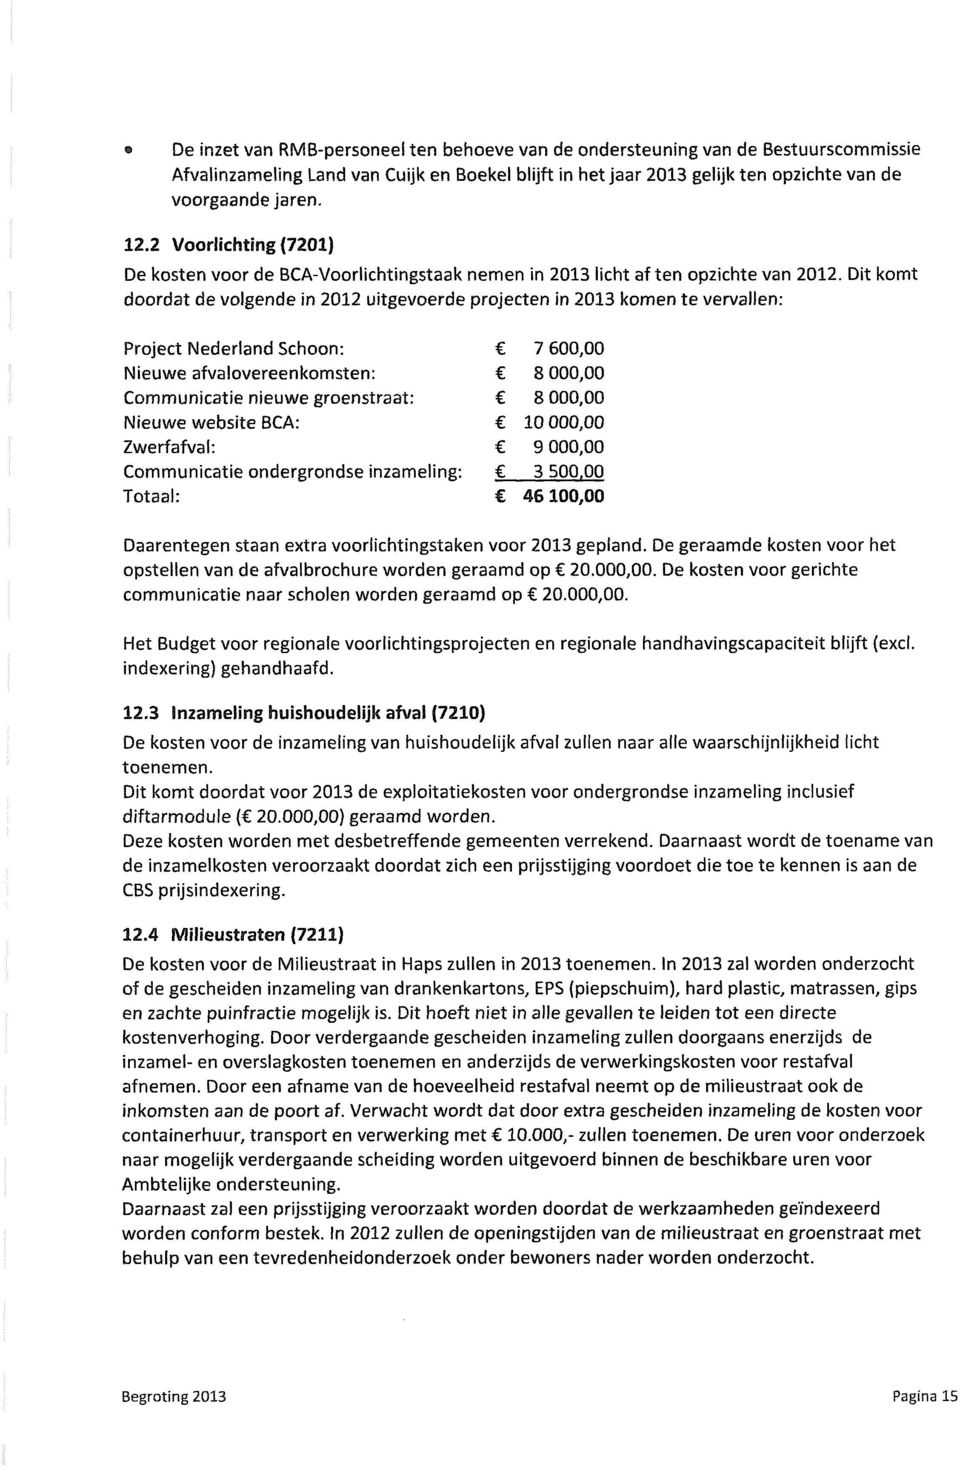 Dit komt doordat de volgende in 2012 uitgevoerde projecten in 2013 komen te vervallen: Project Nederland Schoon: 7 600,00 Nieuwe afvalovereenkomsten: 8 000,00 Communicatie nieuwe groenstraat: 8